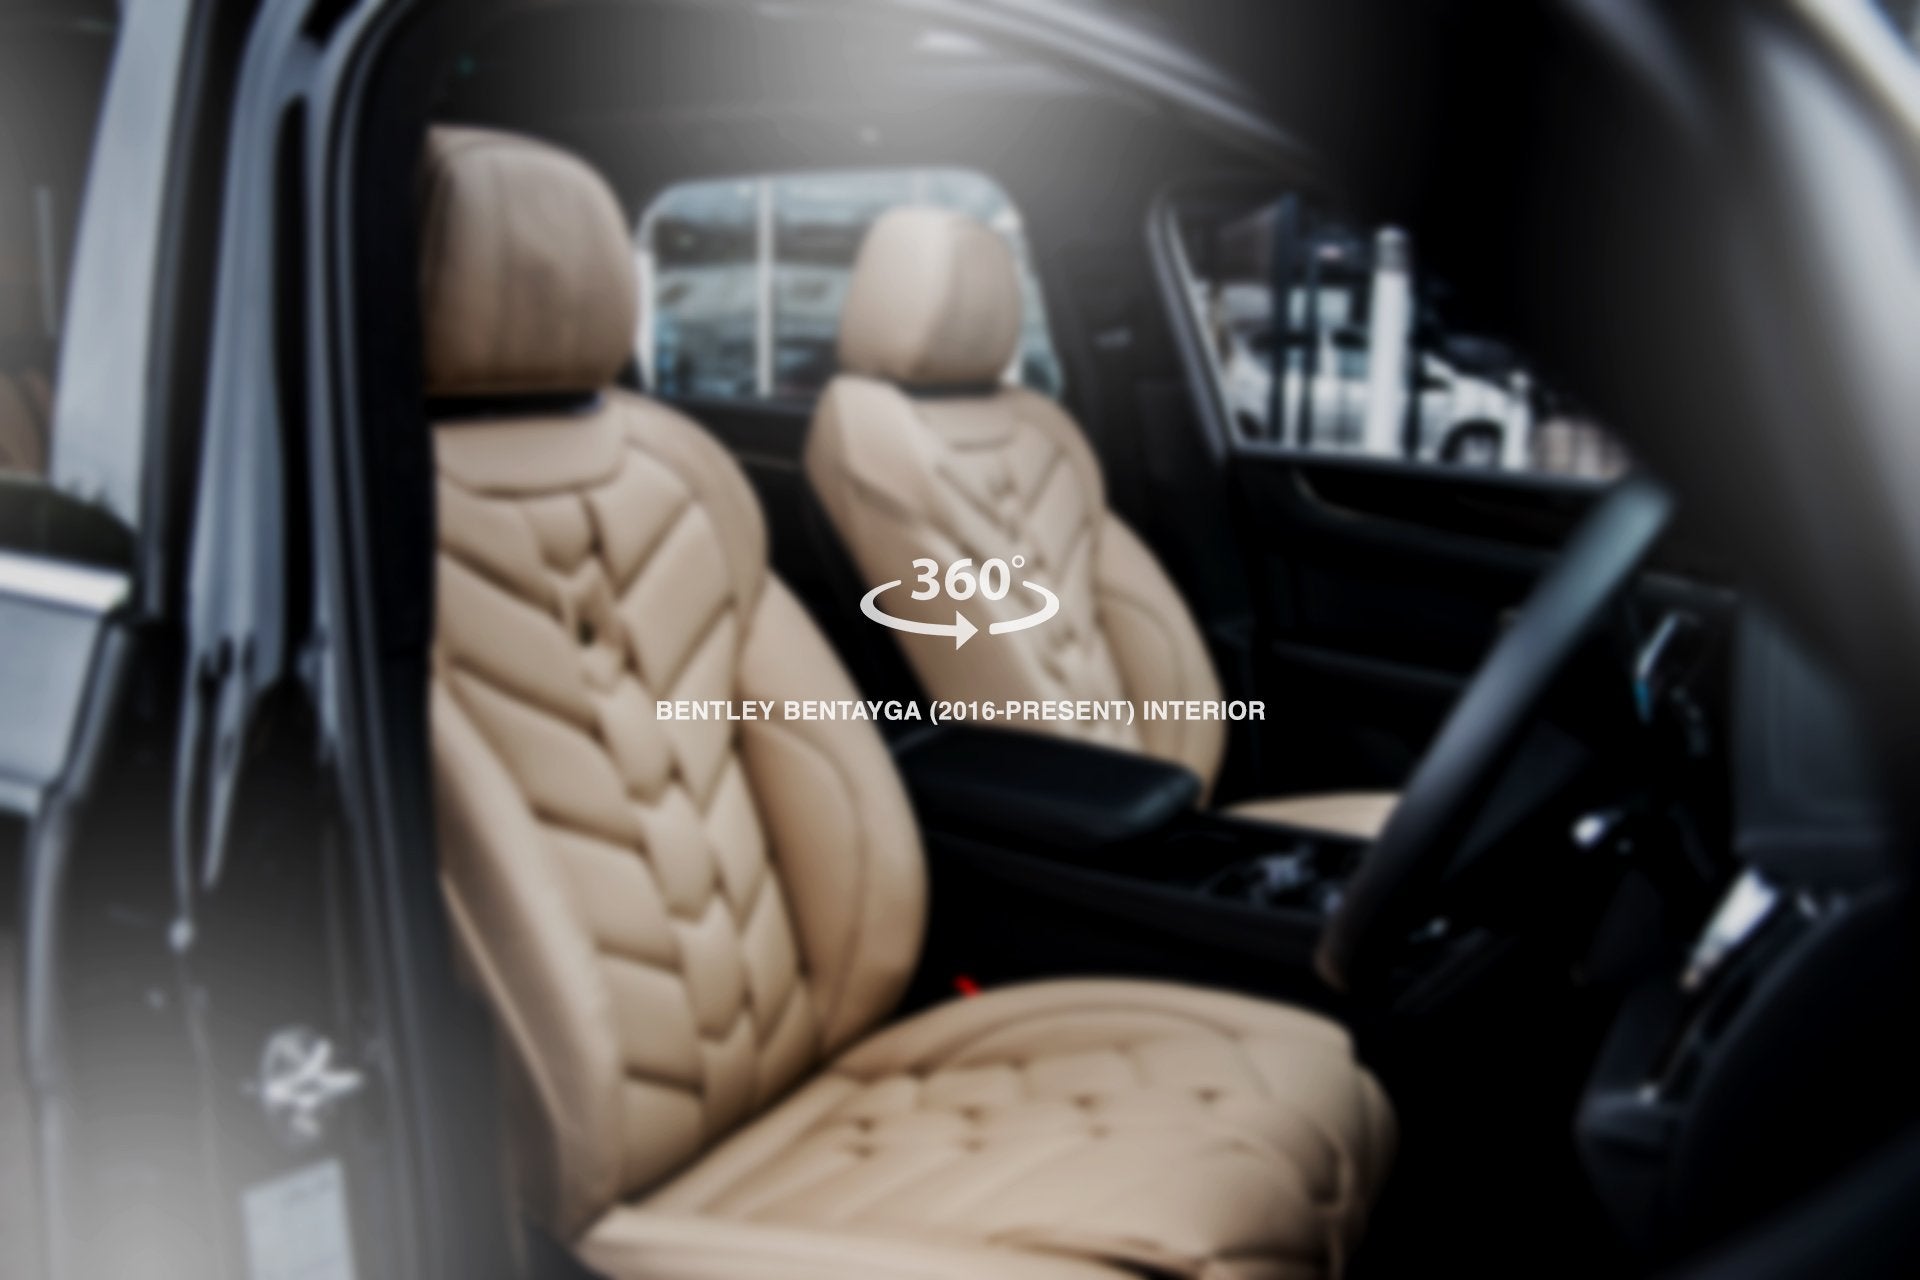 Bentley Bentayga (2016-Present) Comfort Interior - 5 Seats - Project Kahn